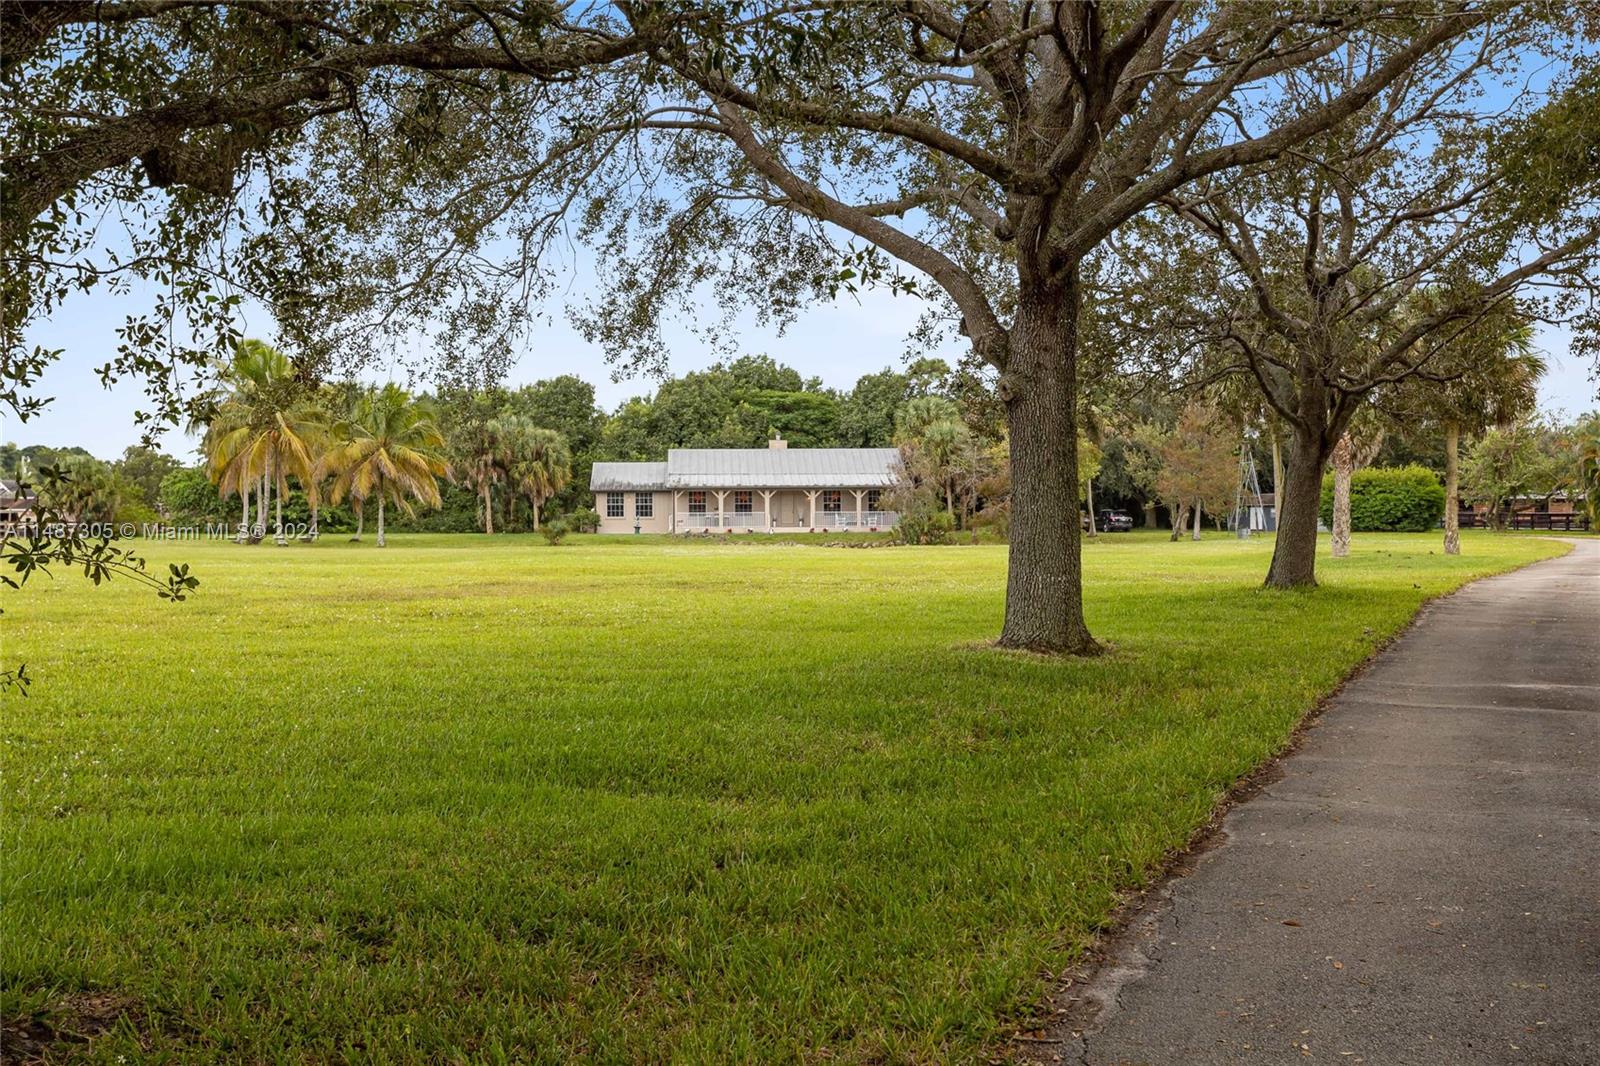 Property for Sale at 4300 Vinkemulder Rd, Coconut Creek, Broward County, Florida - Bedrooms: 4 
Bathrooms: 4  - $2,495,000